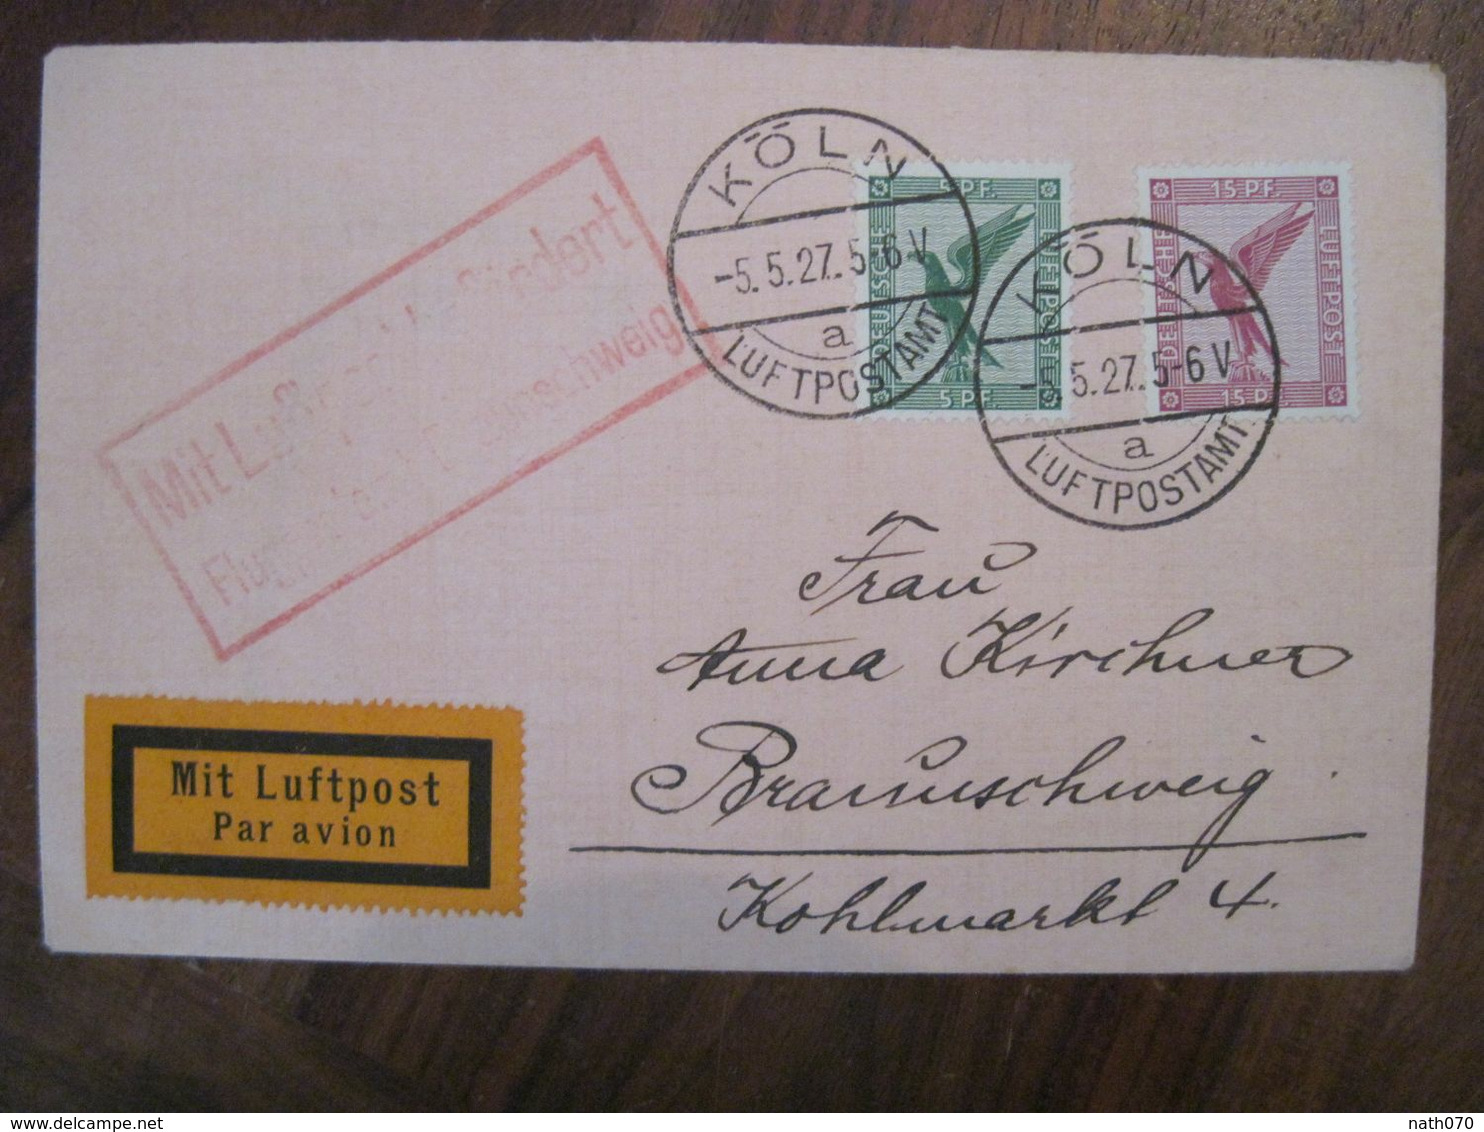 1927 Flugpost Mit Luftpost Air Mail Poste Aerienne Cover Deutsches Reich DR Germany Allemagne Luftpostamt - Briefe U. Dokumente